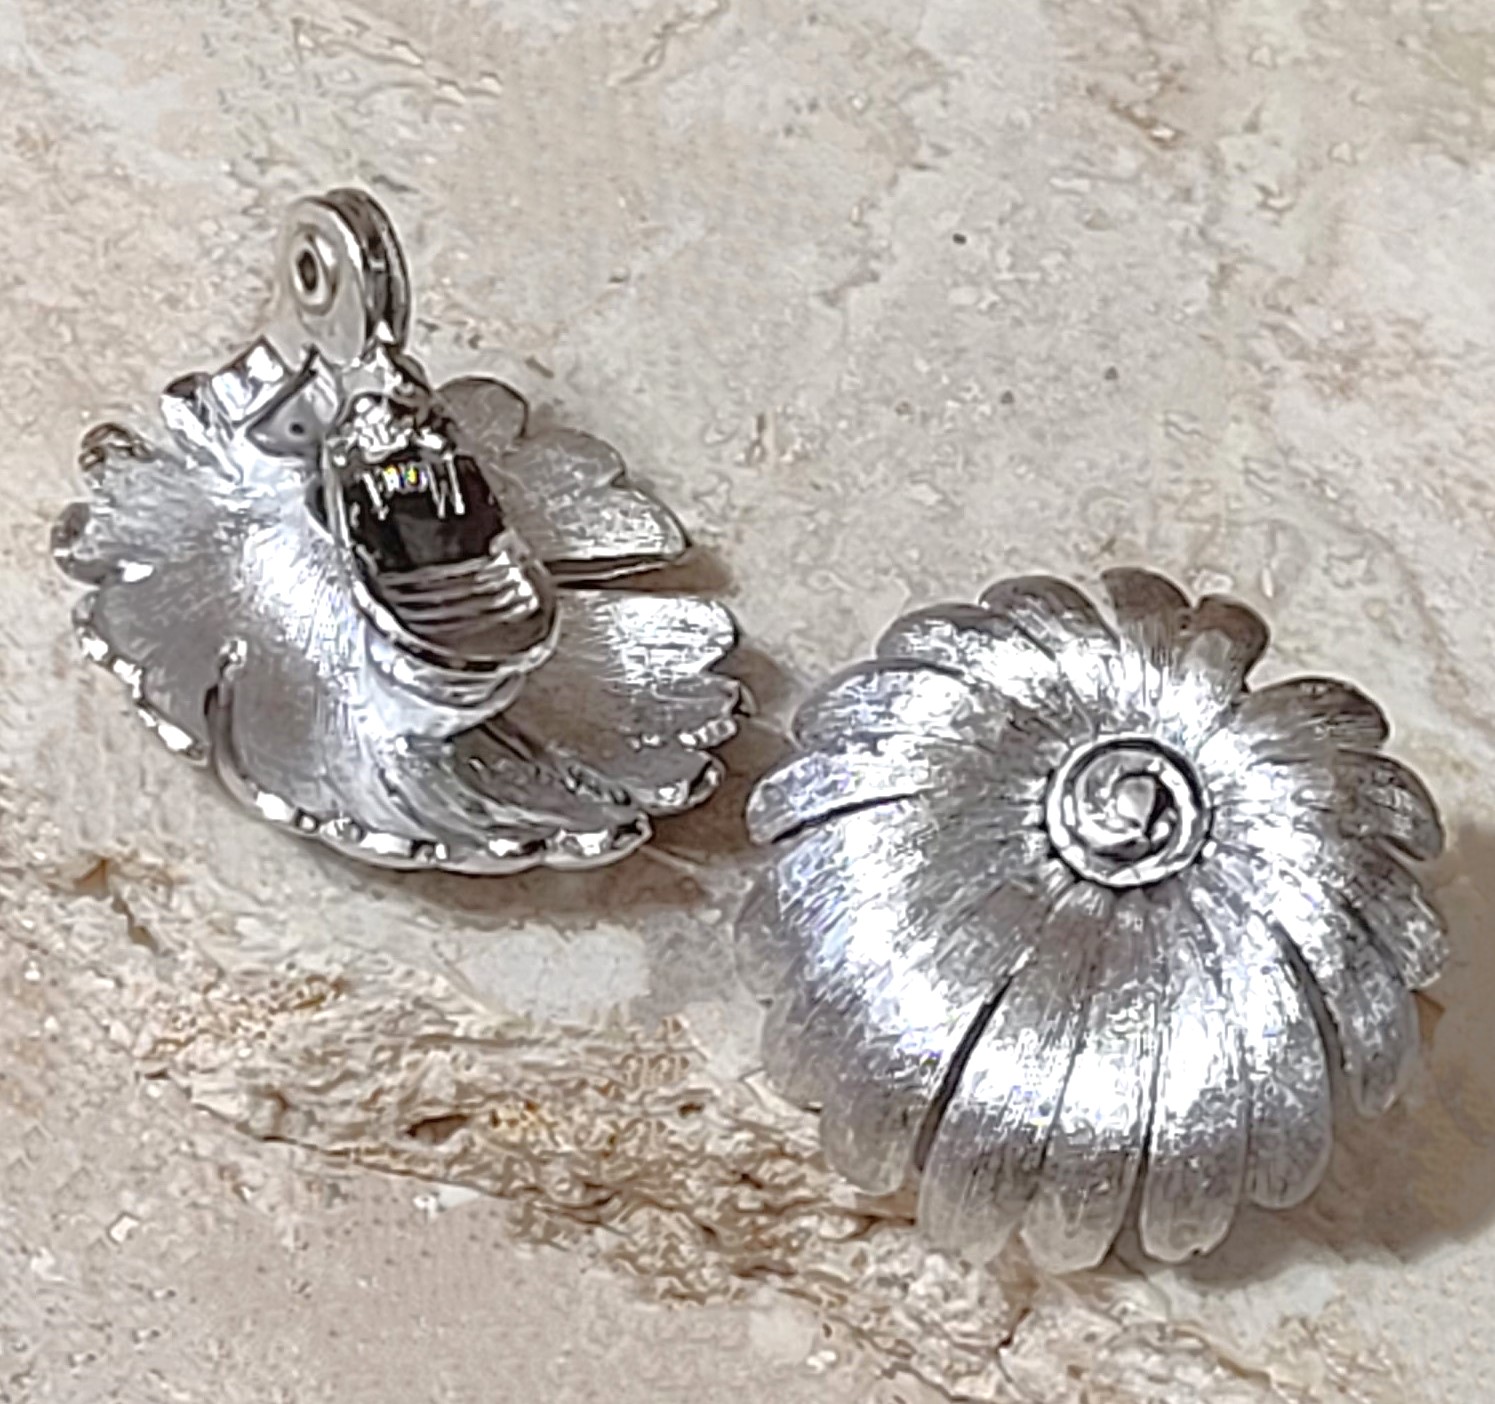 Monet clipon earrings, silvertone flowers, button style vintage earrings